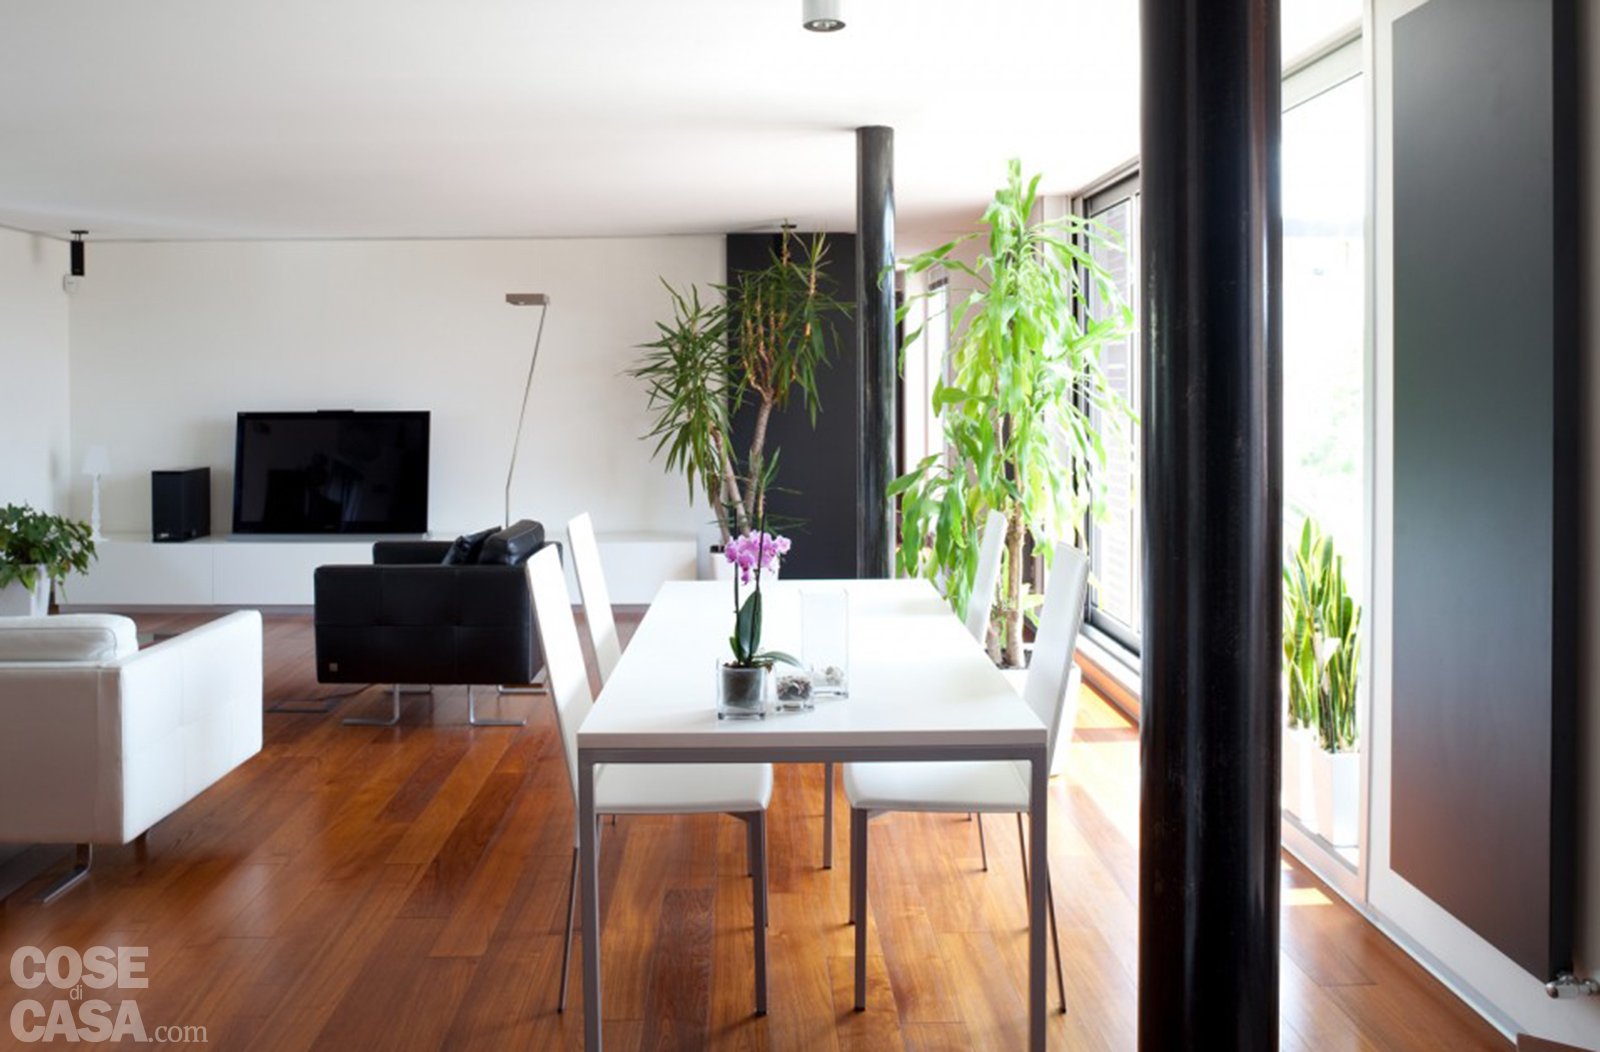 Casabook immobiliare 80 mq una casa per due perfetta for Casa moderna 80 mq